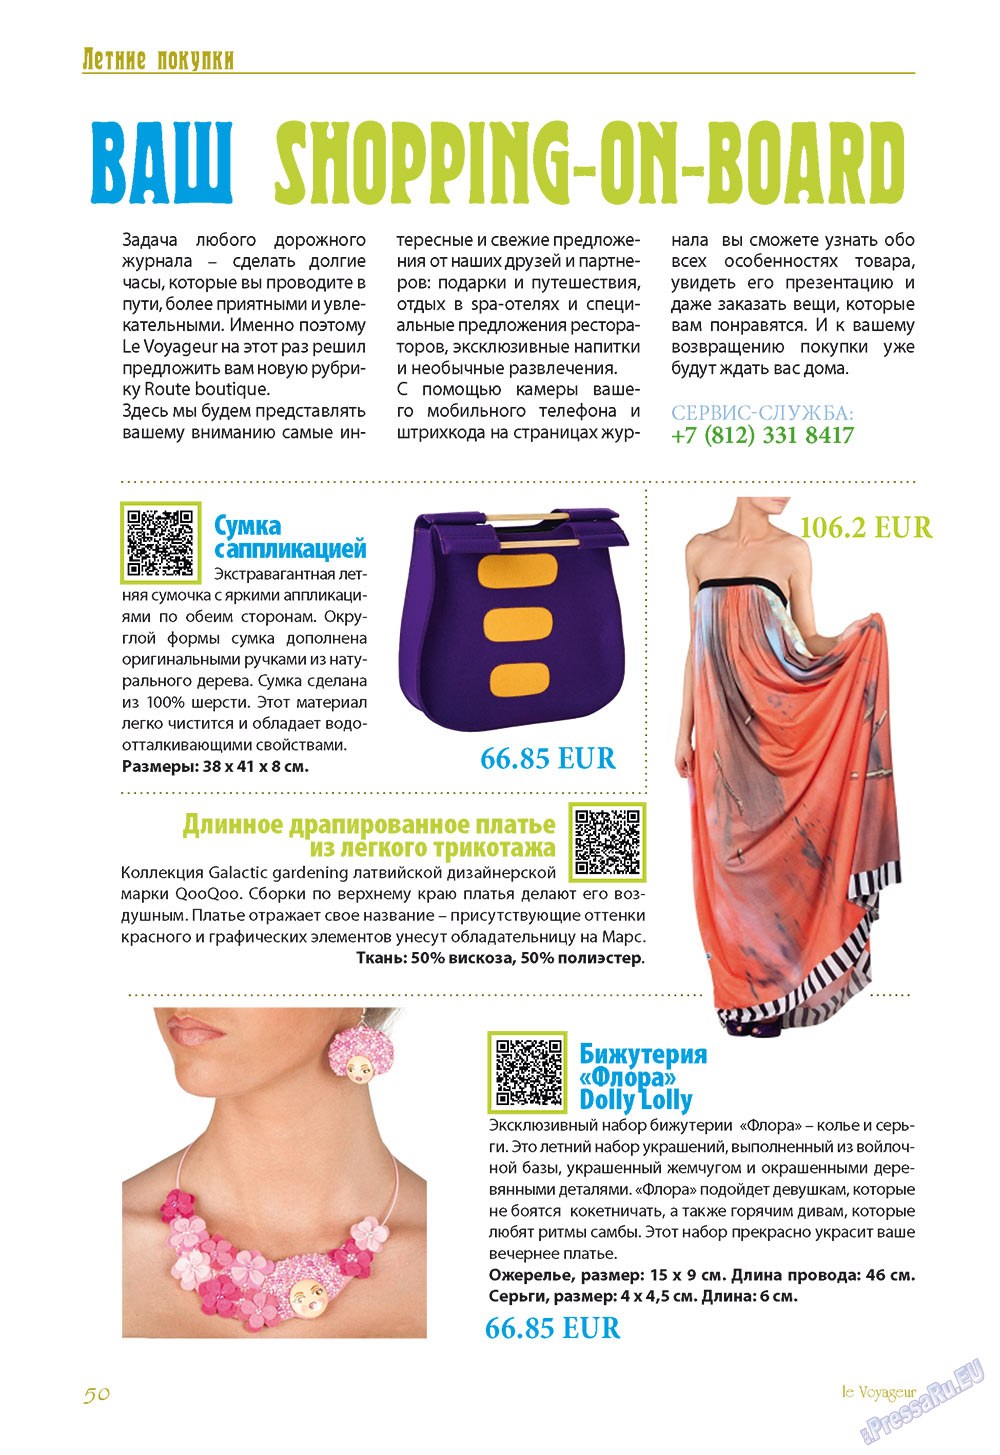 Le Voyageur (журнал). 2012 год, номер 21, стр. 52